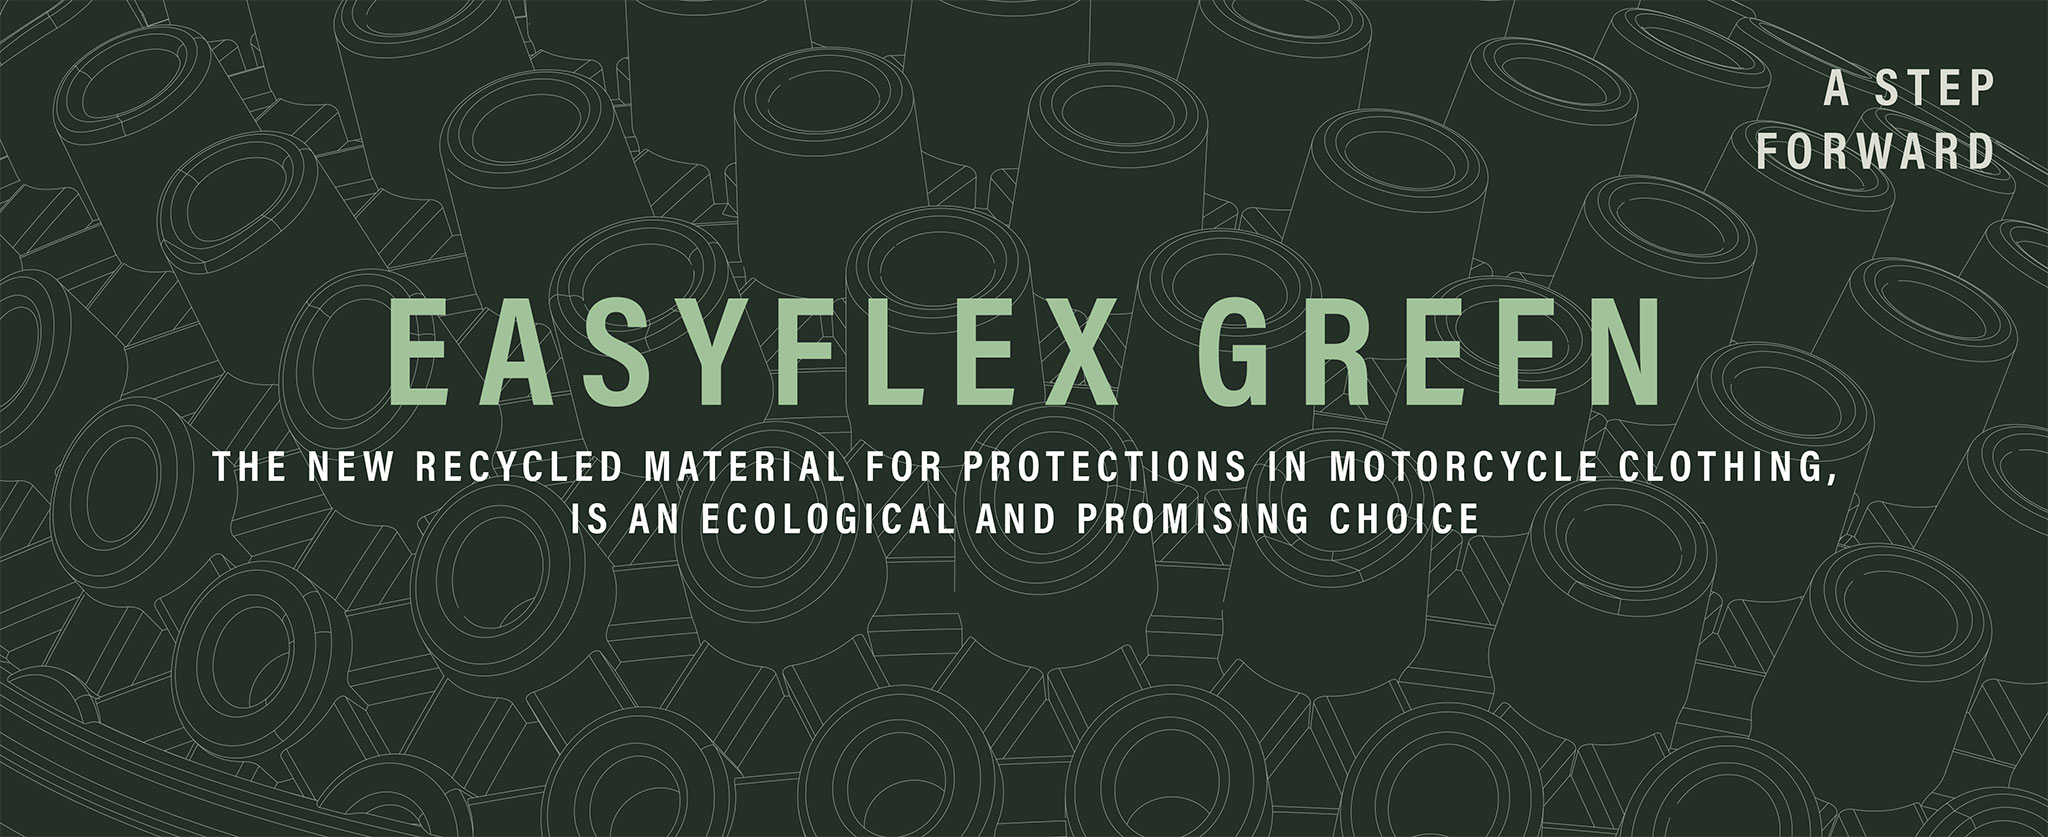 esayflex-green-header